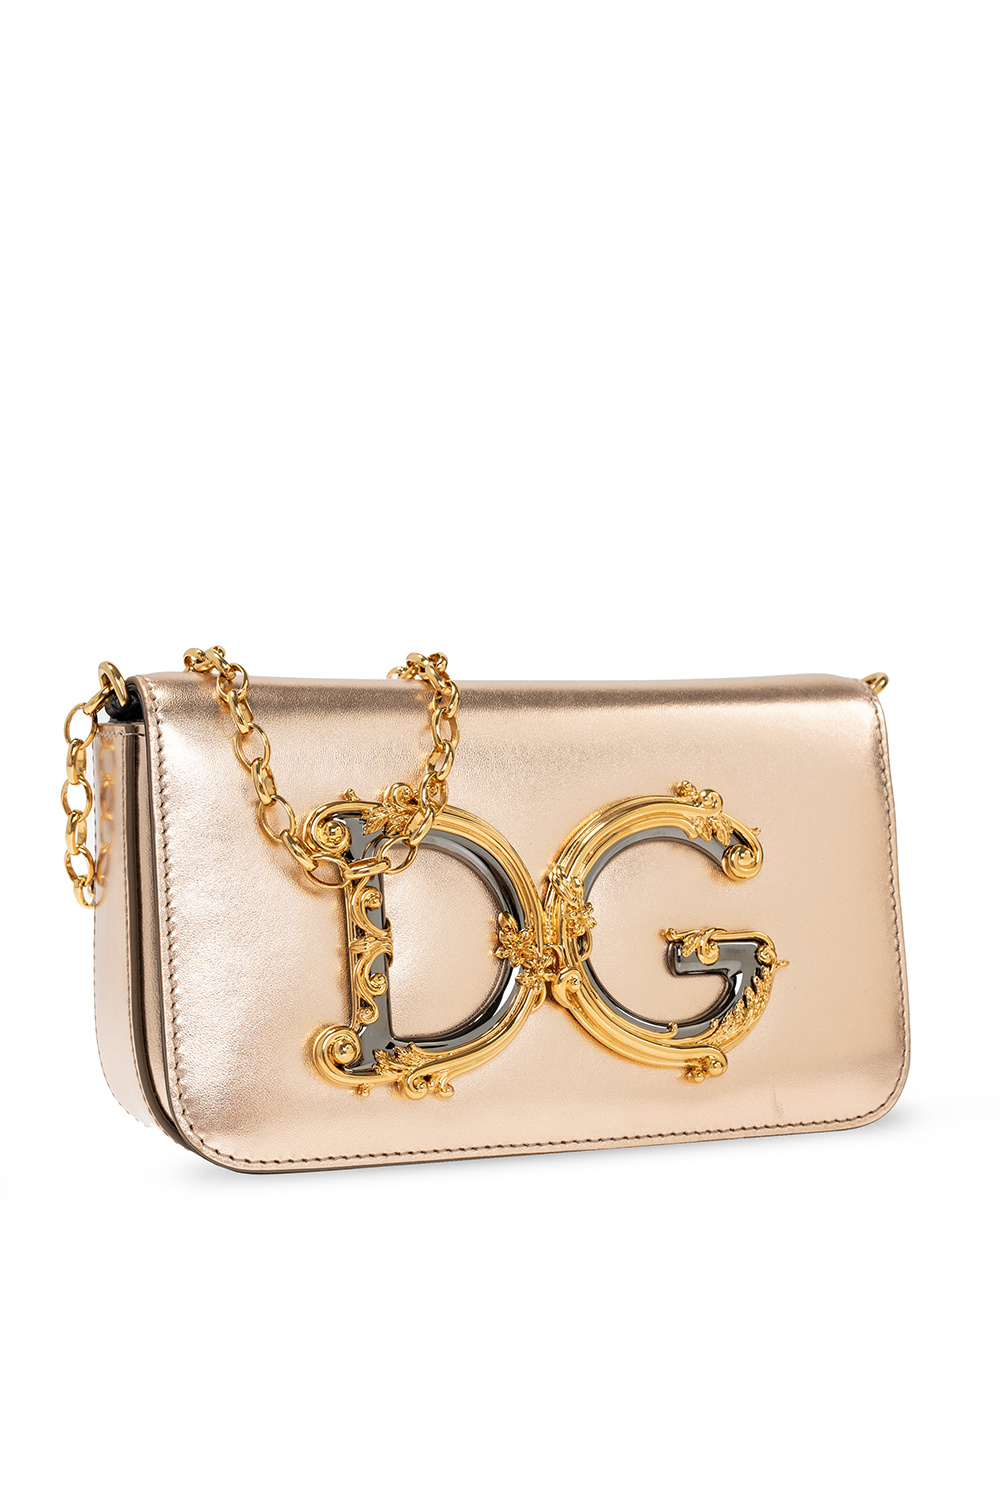 dolce Men & Gabbana ‘DG Girls’ shoulder bag